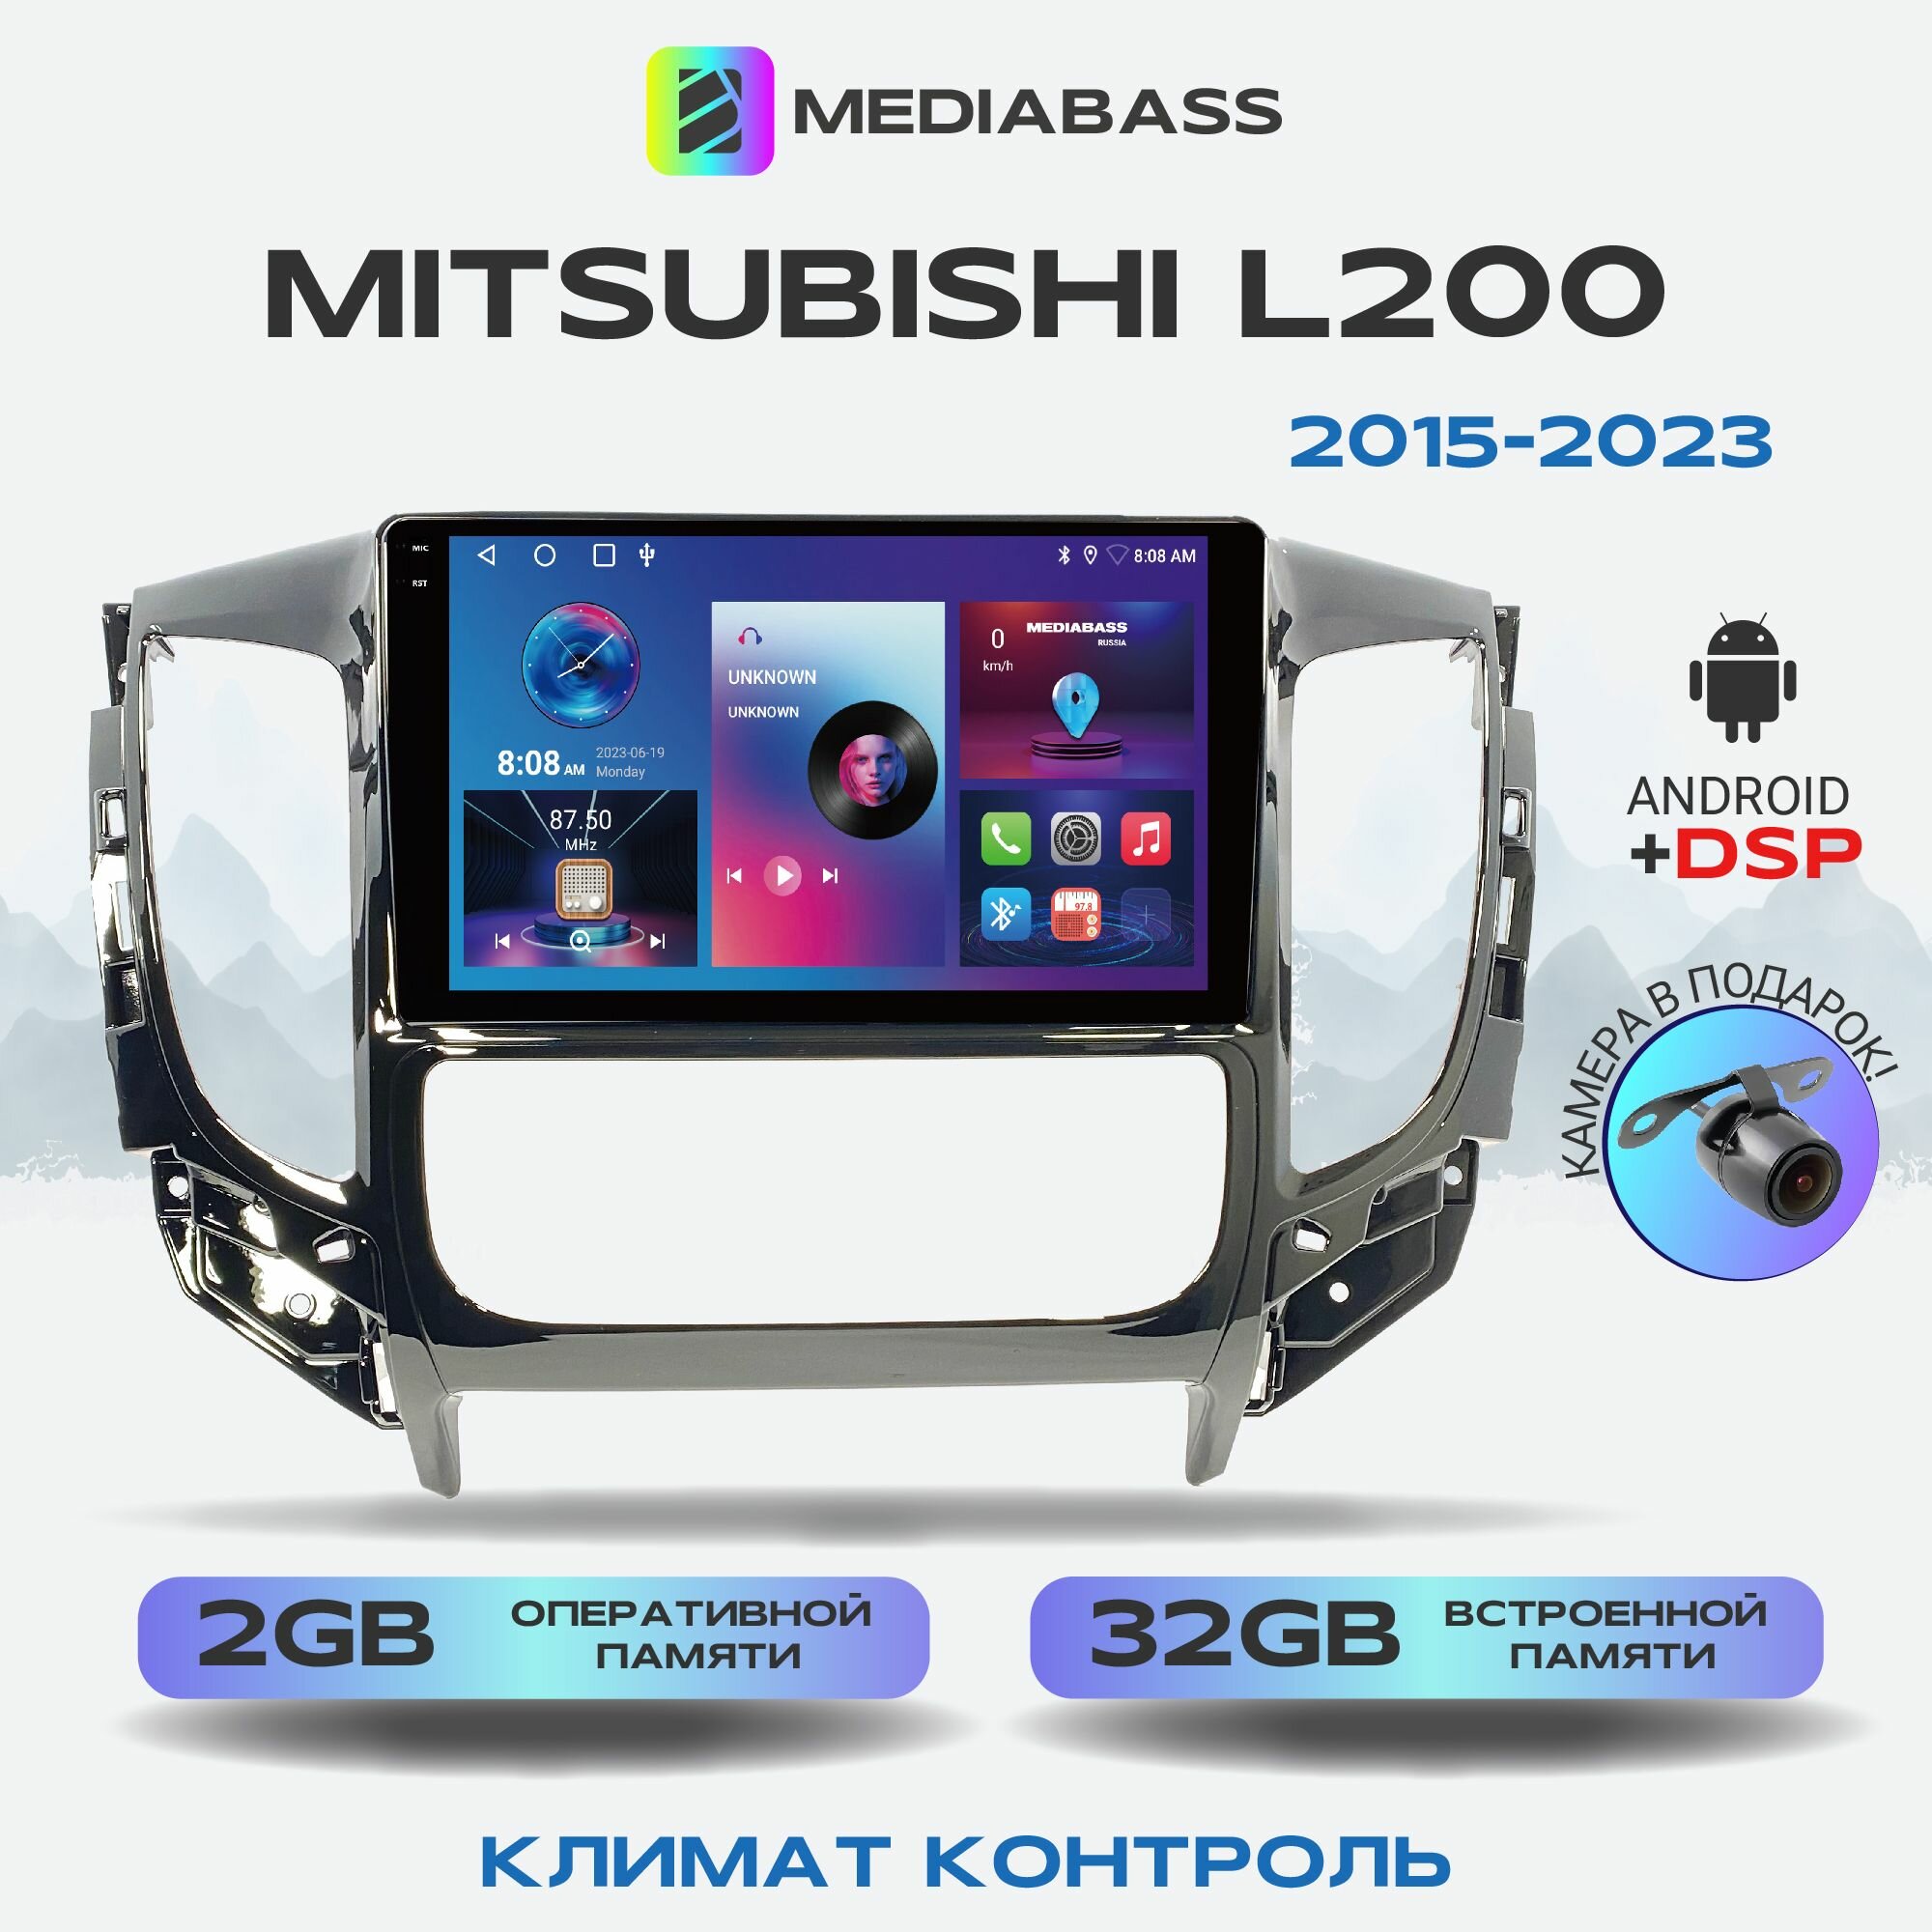 Автомагнитола Mediabass PRO Mitsubishi L200 2015-2023 Климат контроль, 2/32ГБ, Android 12 / Митсубиши Л200, 4-ядерный процессор, QLED экран с разрешением 1280*720, DSP, чип-усилитель YD7388